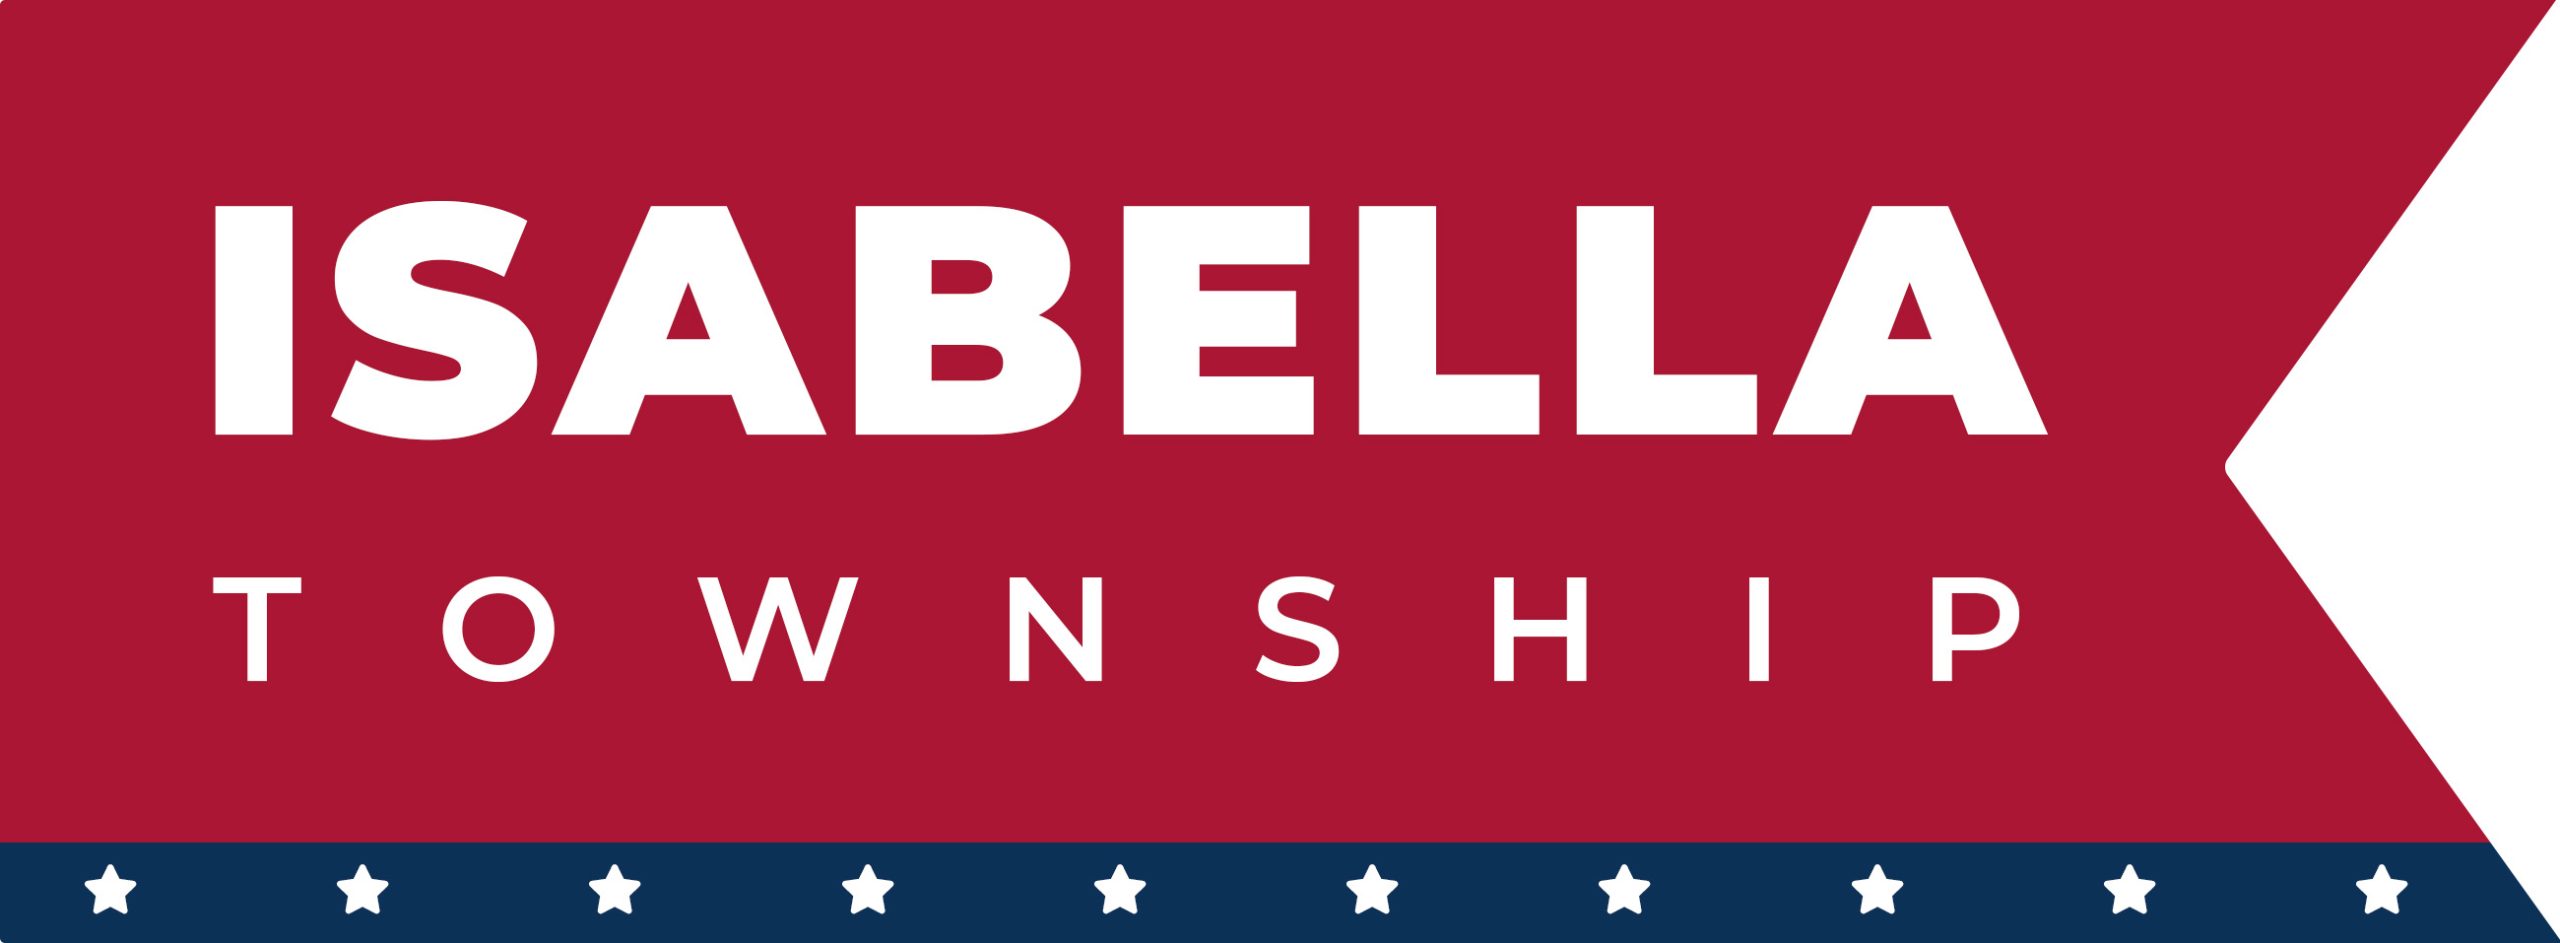 Isabella Township logo